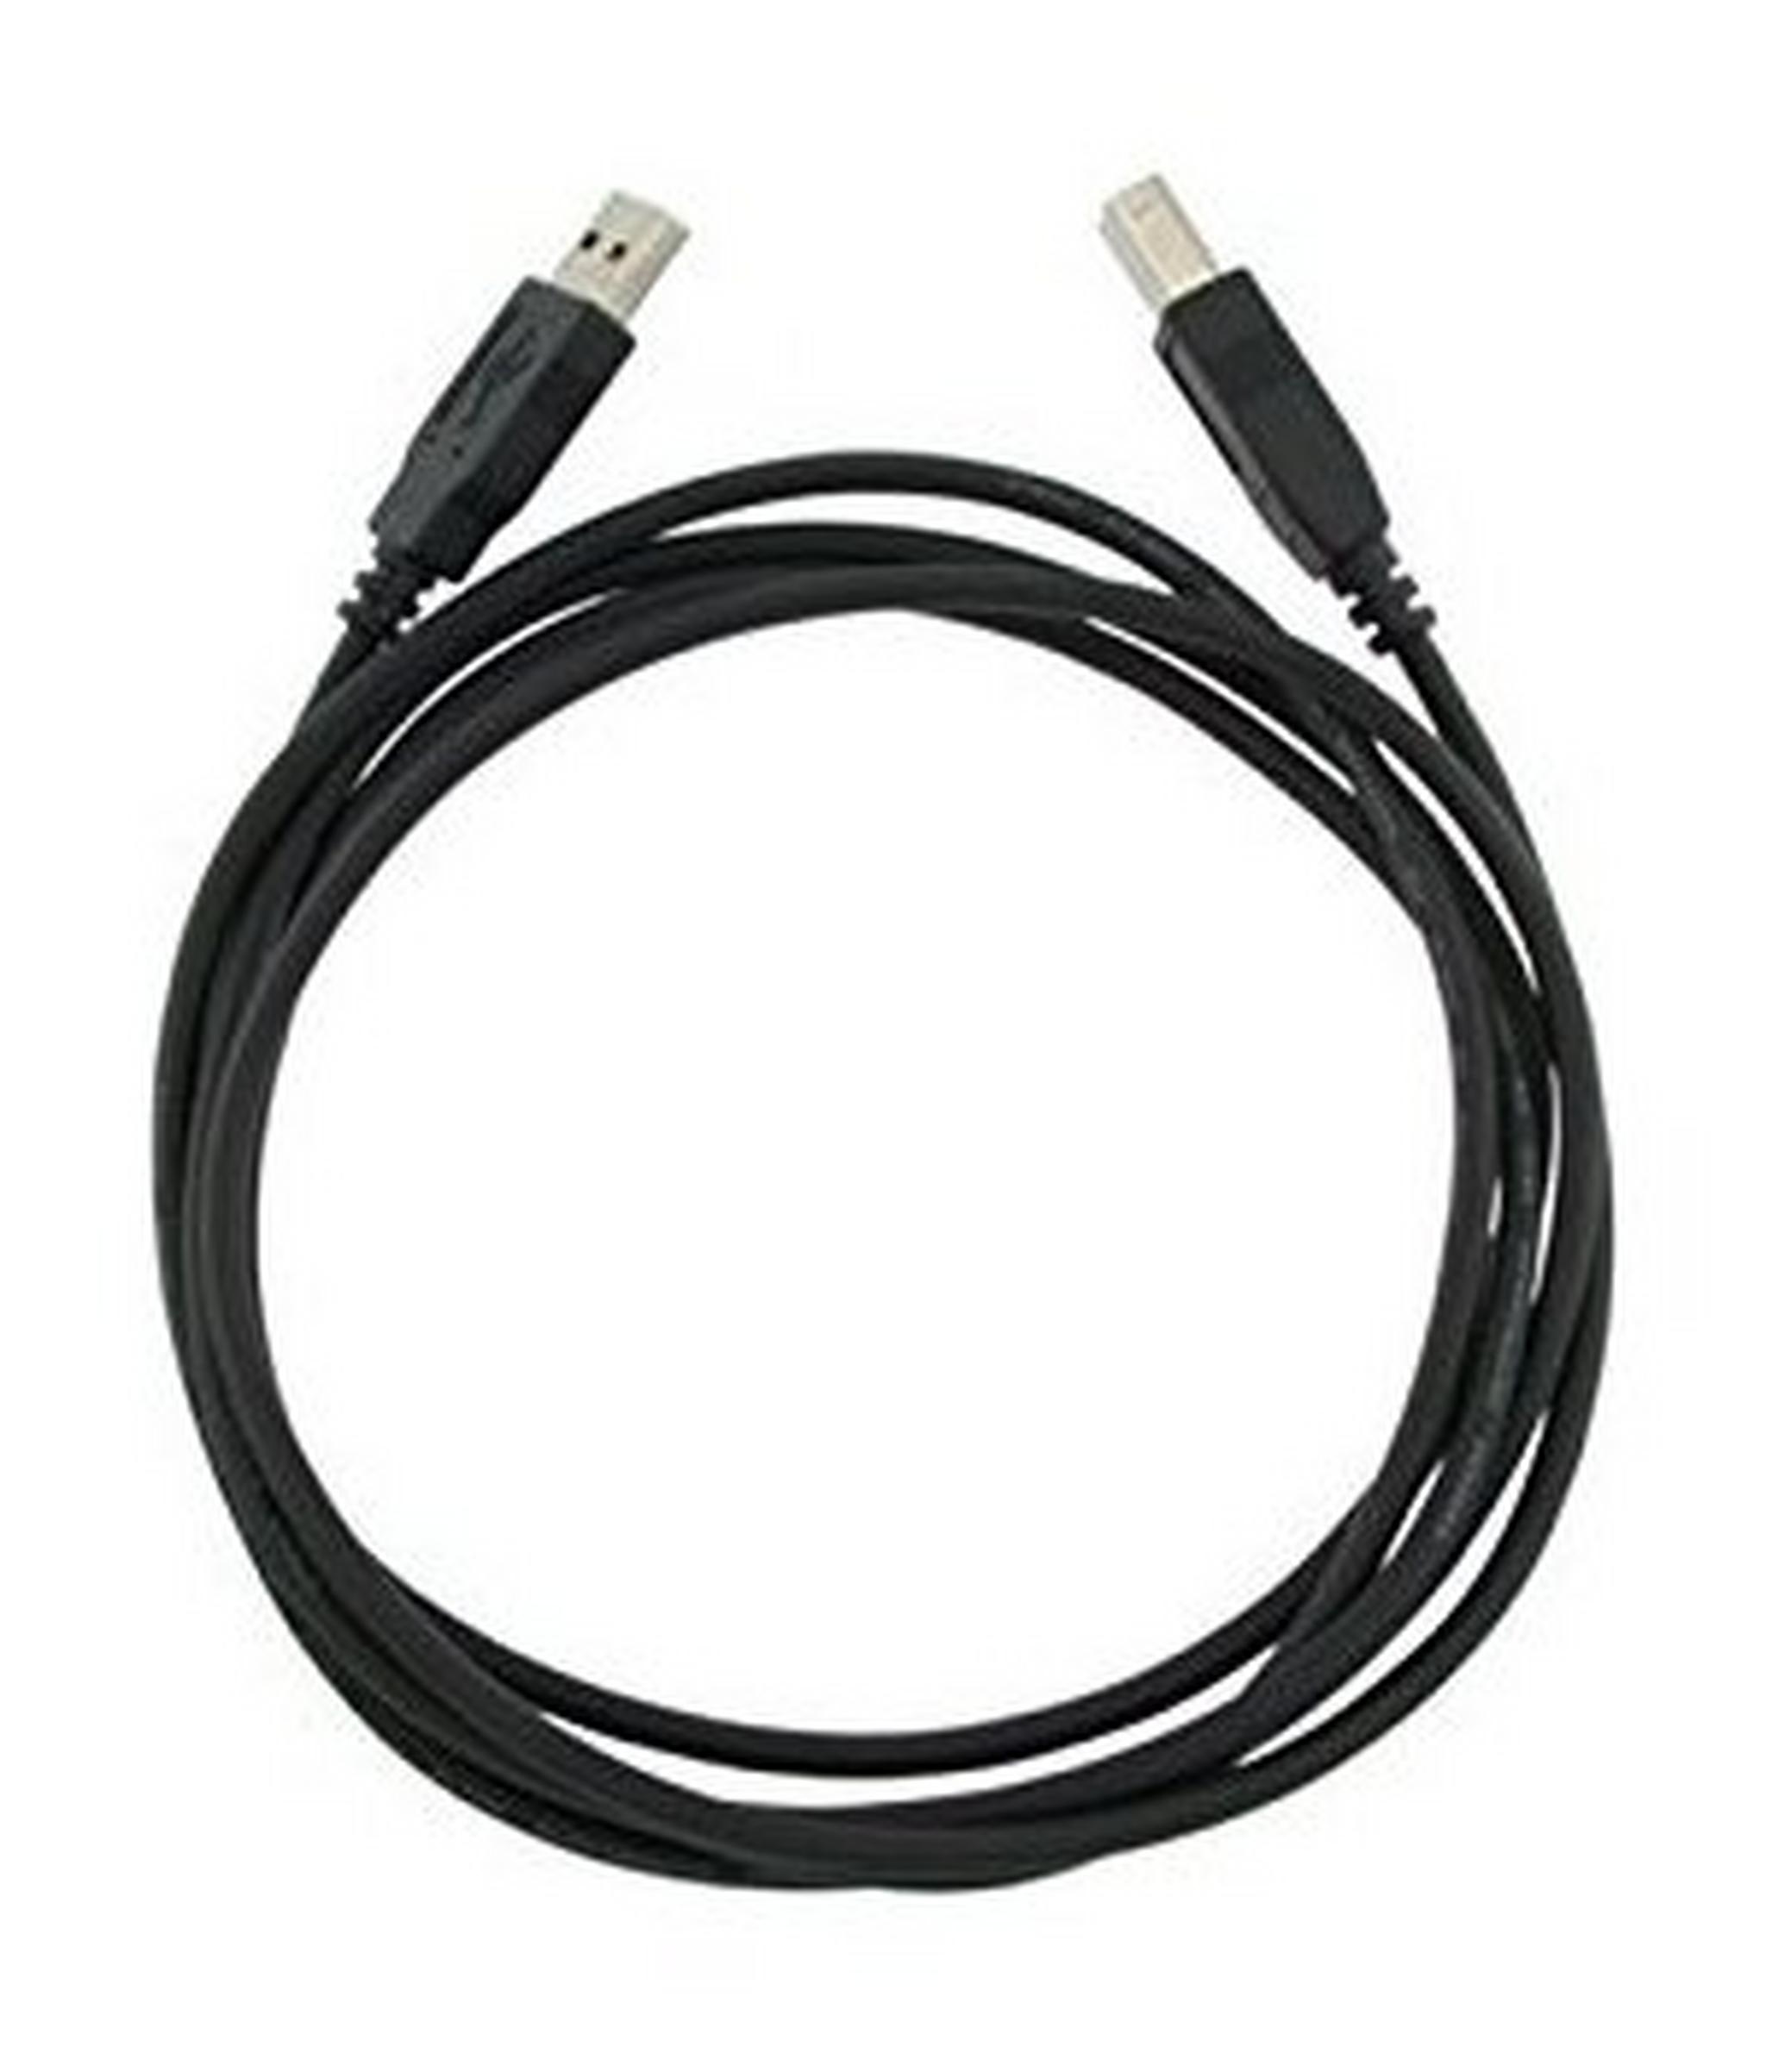 EQ 1M Printer Cable (OM03AB) - Black